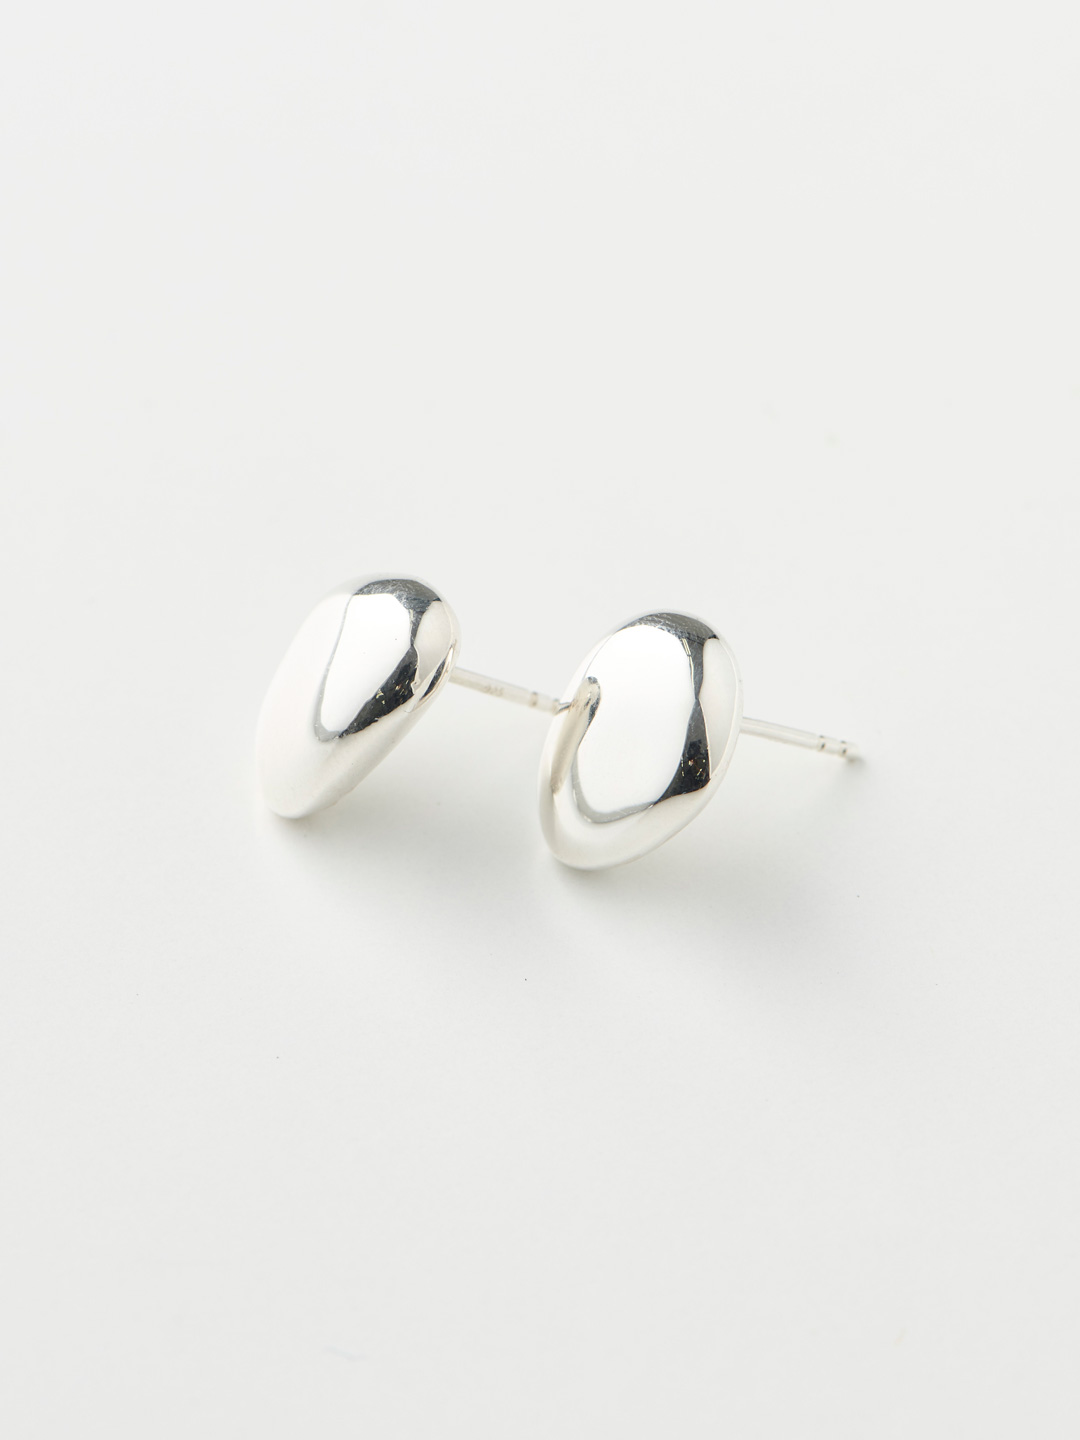 石ころ Piereced Earring / STT-01P - Silver